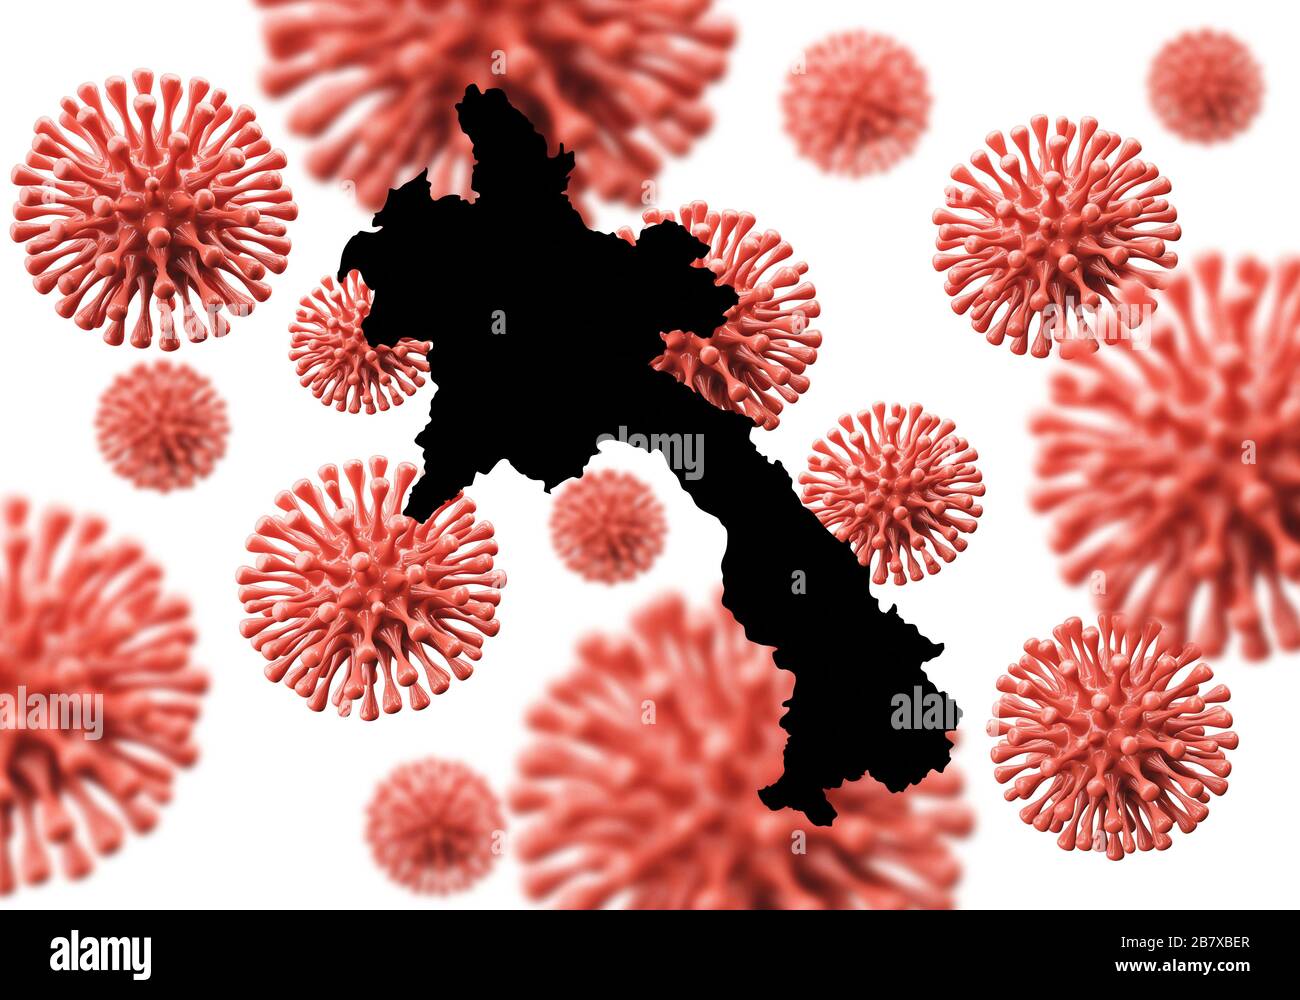 Laos carte sur un fond microbe de virus scientifique. Rendu 3D Banque D'Images